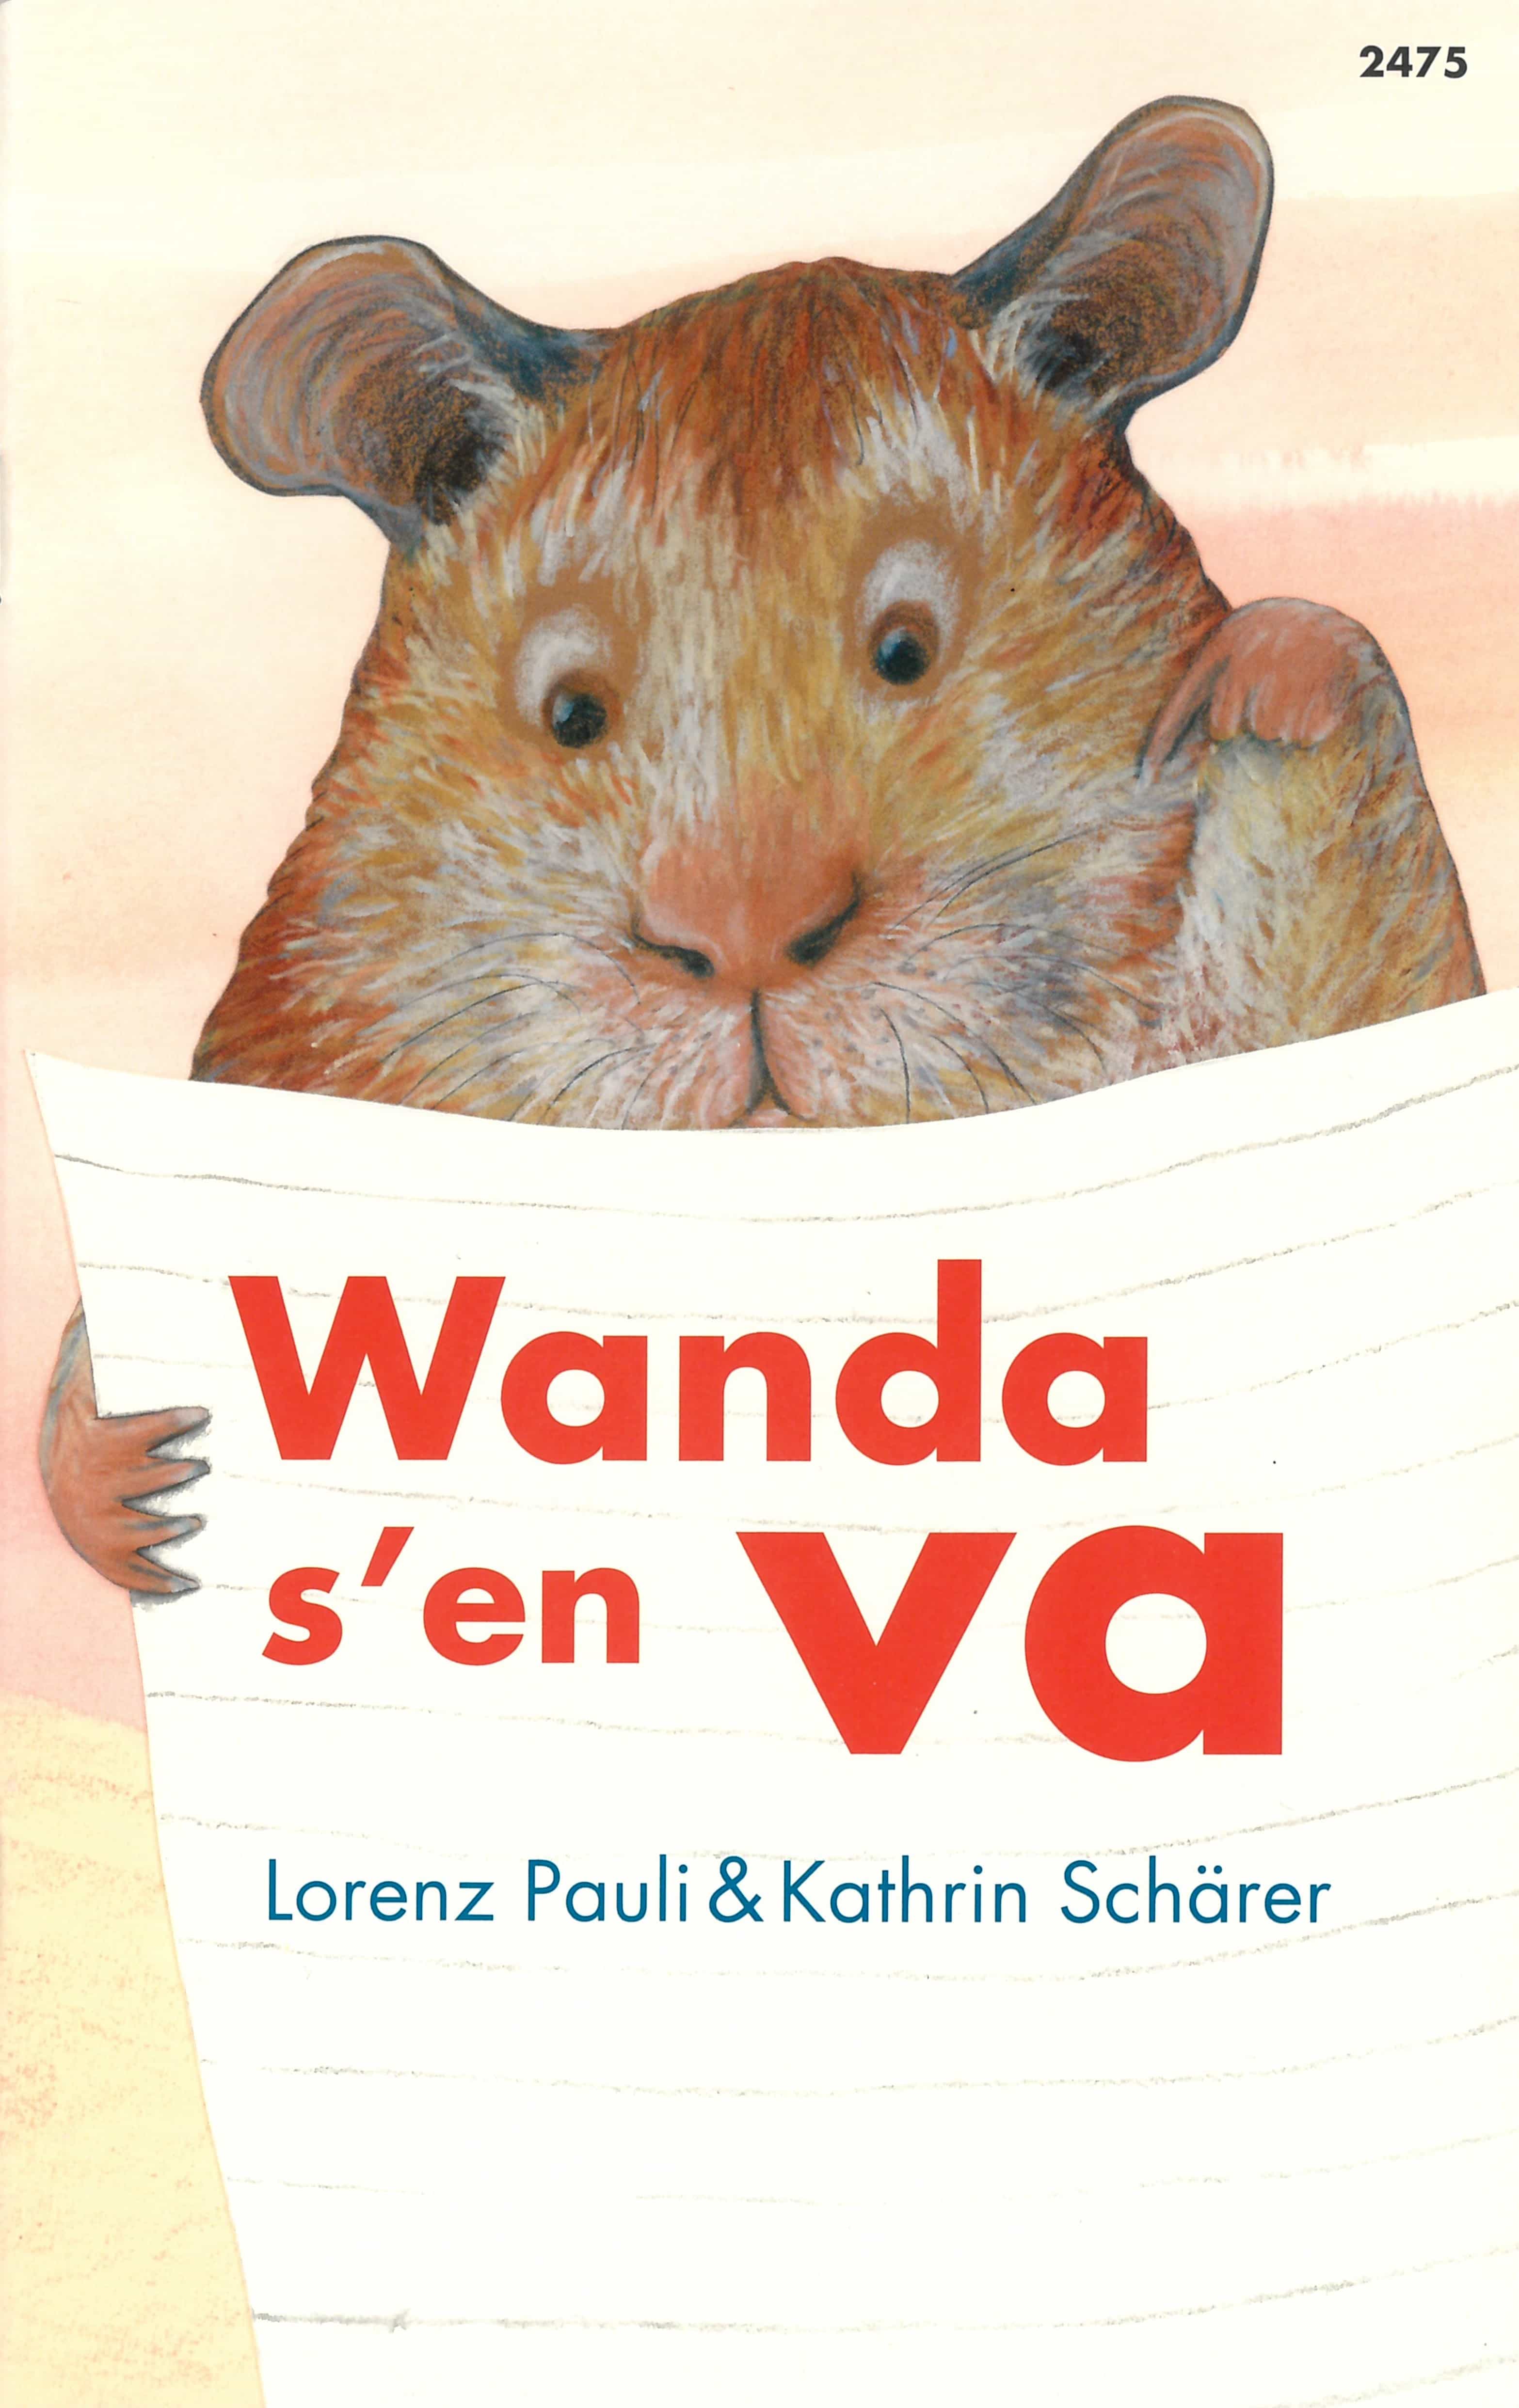 Wanda s'en va, un livre pour enfants de Lorenz Pauli, illustré par Kathrin Schaerer, éditions de l'OSL, fantastique